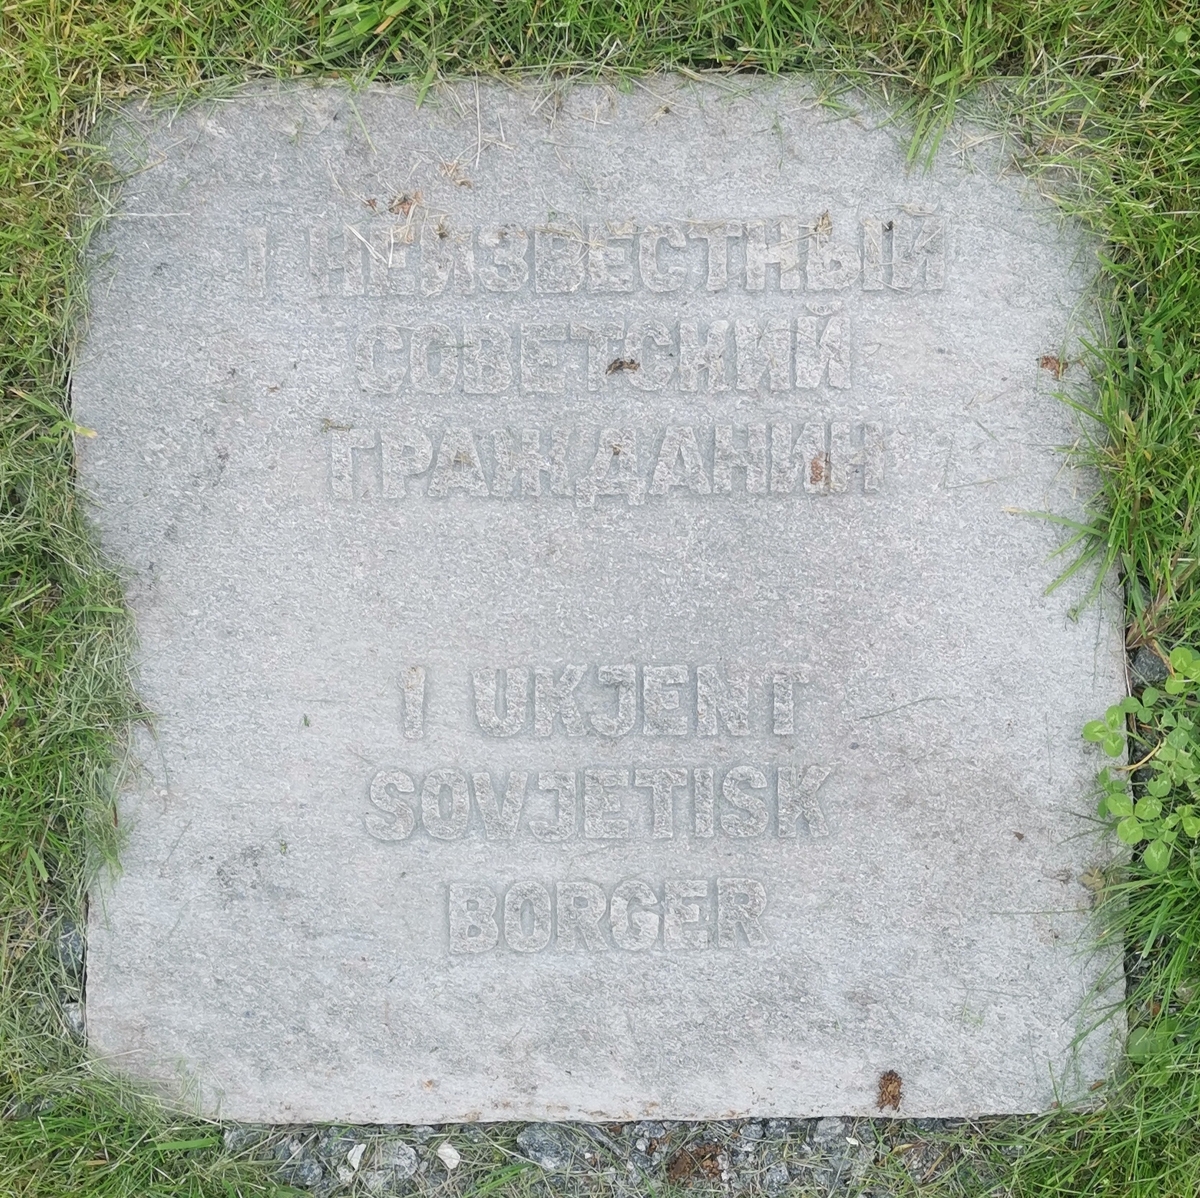 Gravminne på Aukra kirkegård merket "1 ukjent sovjetisk borger".